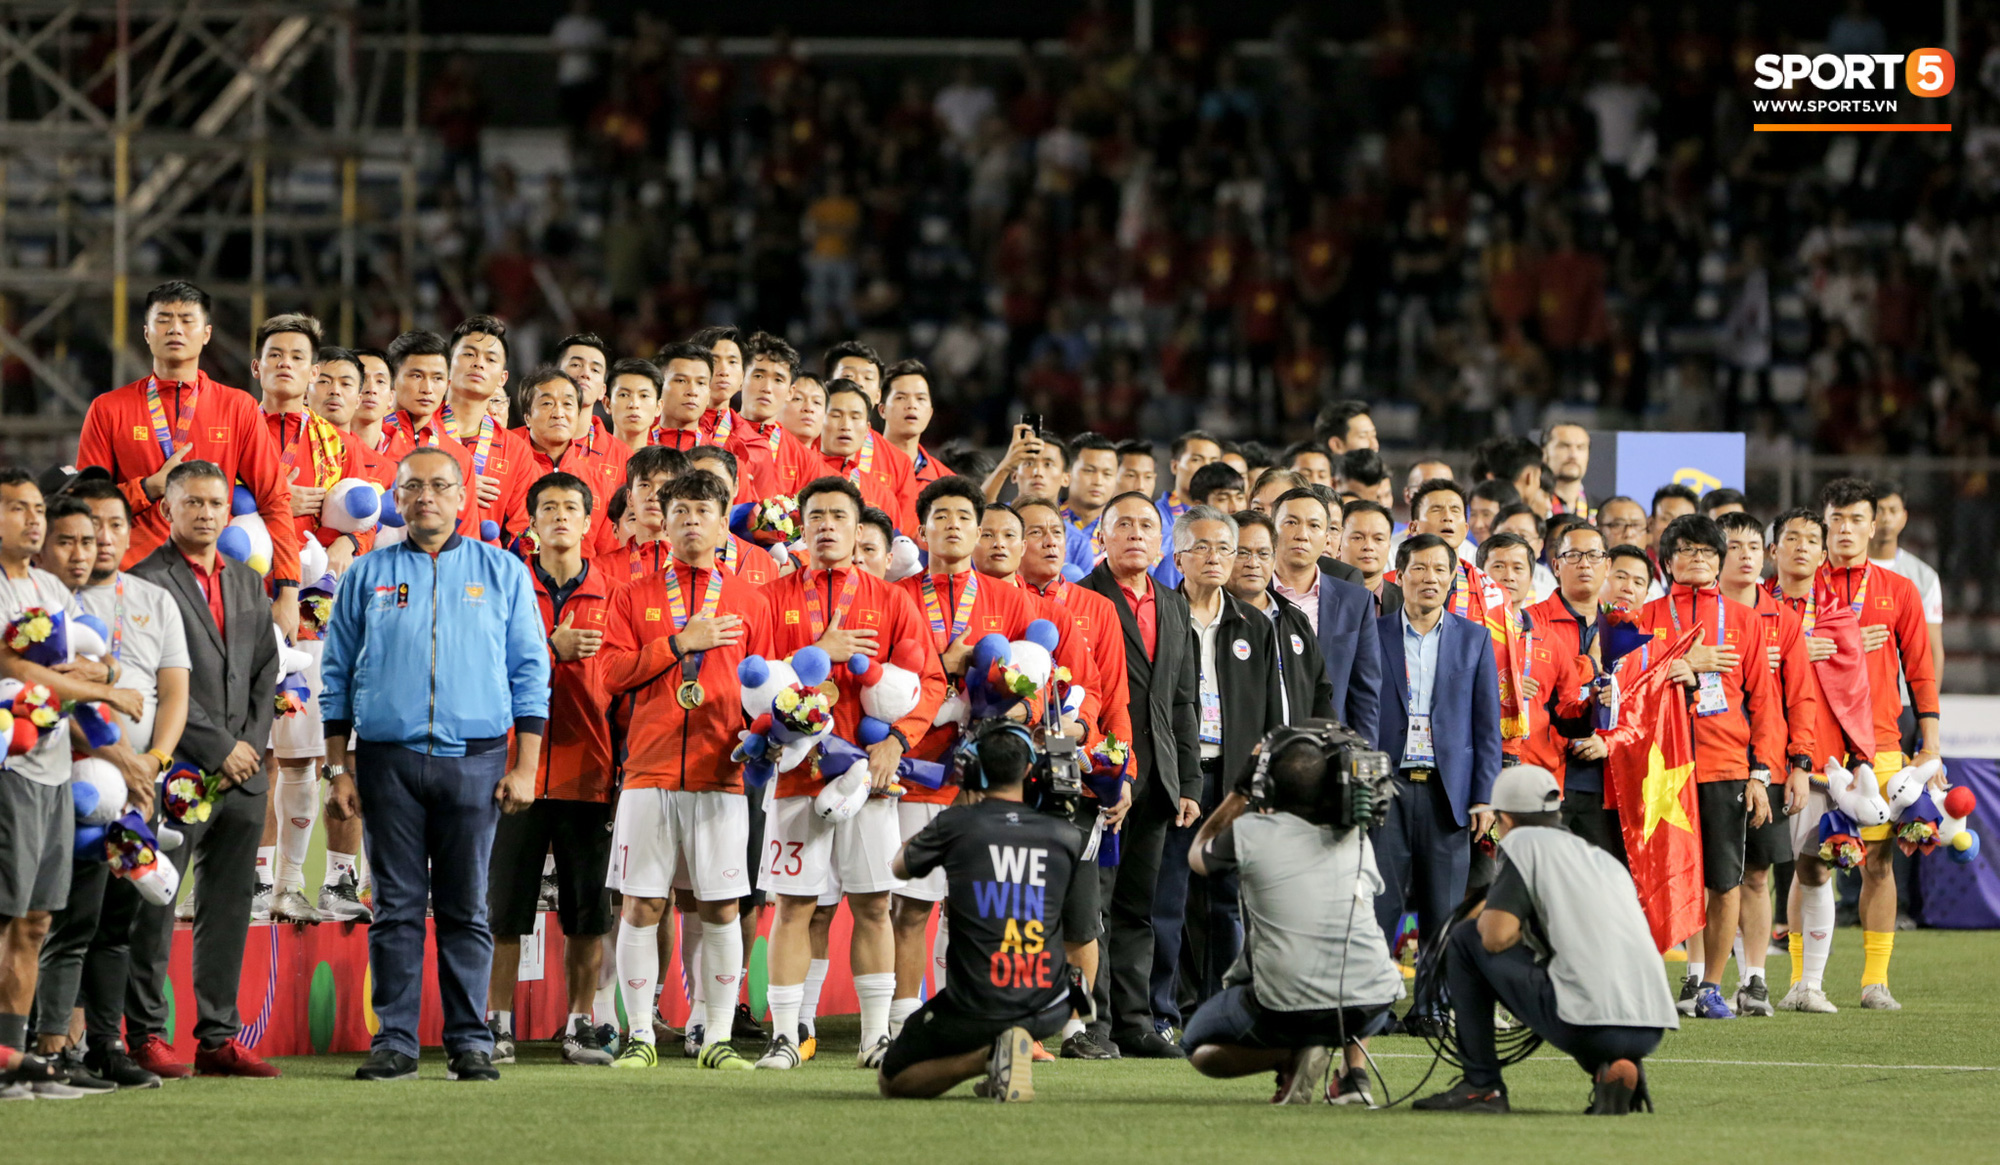 Đội nhà thua sấp mặt, fan Indonesia kéo vào Wikipedia đổi số huy chương của Việt Nam về 0, tự tâng bản thân lên vị trí dẫn đầu - Ảnh 4.